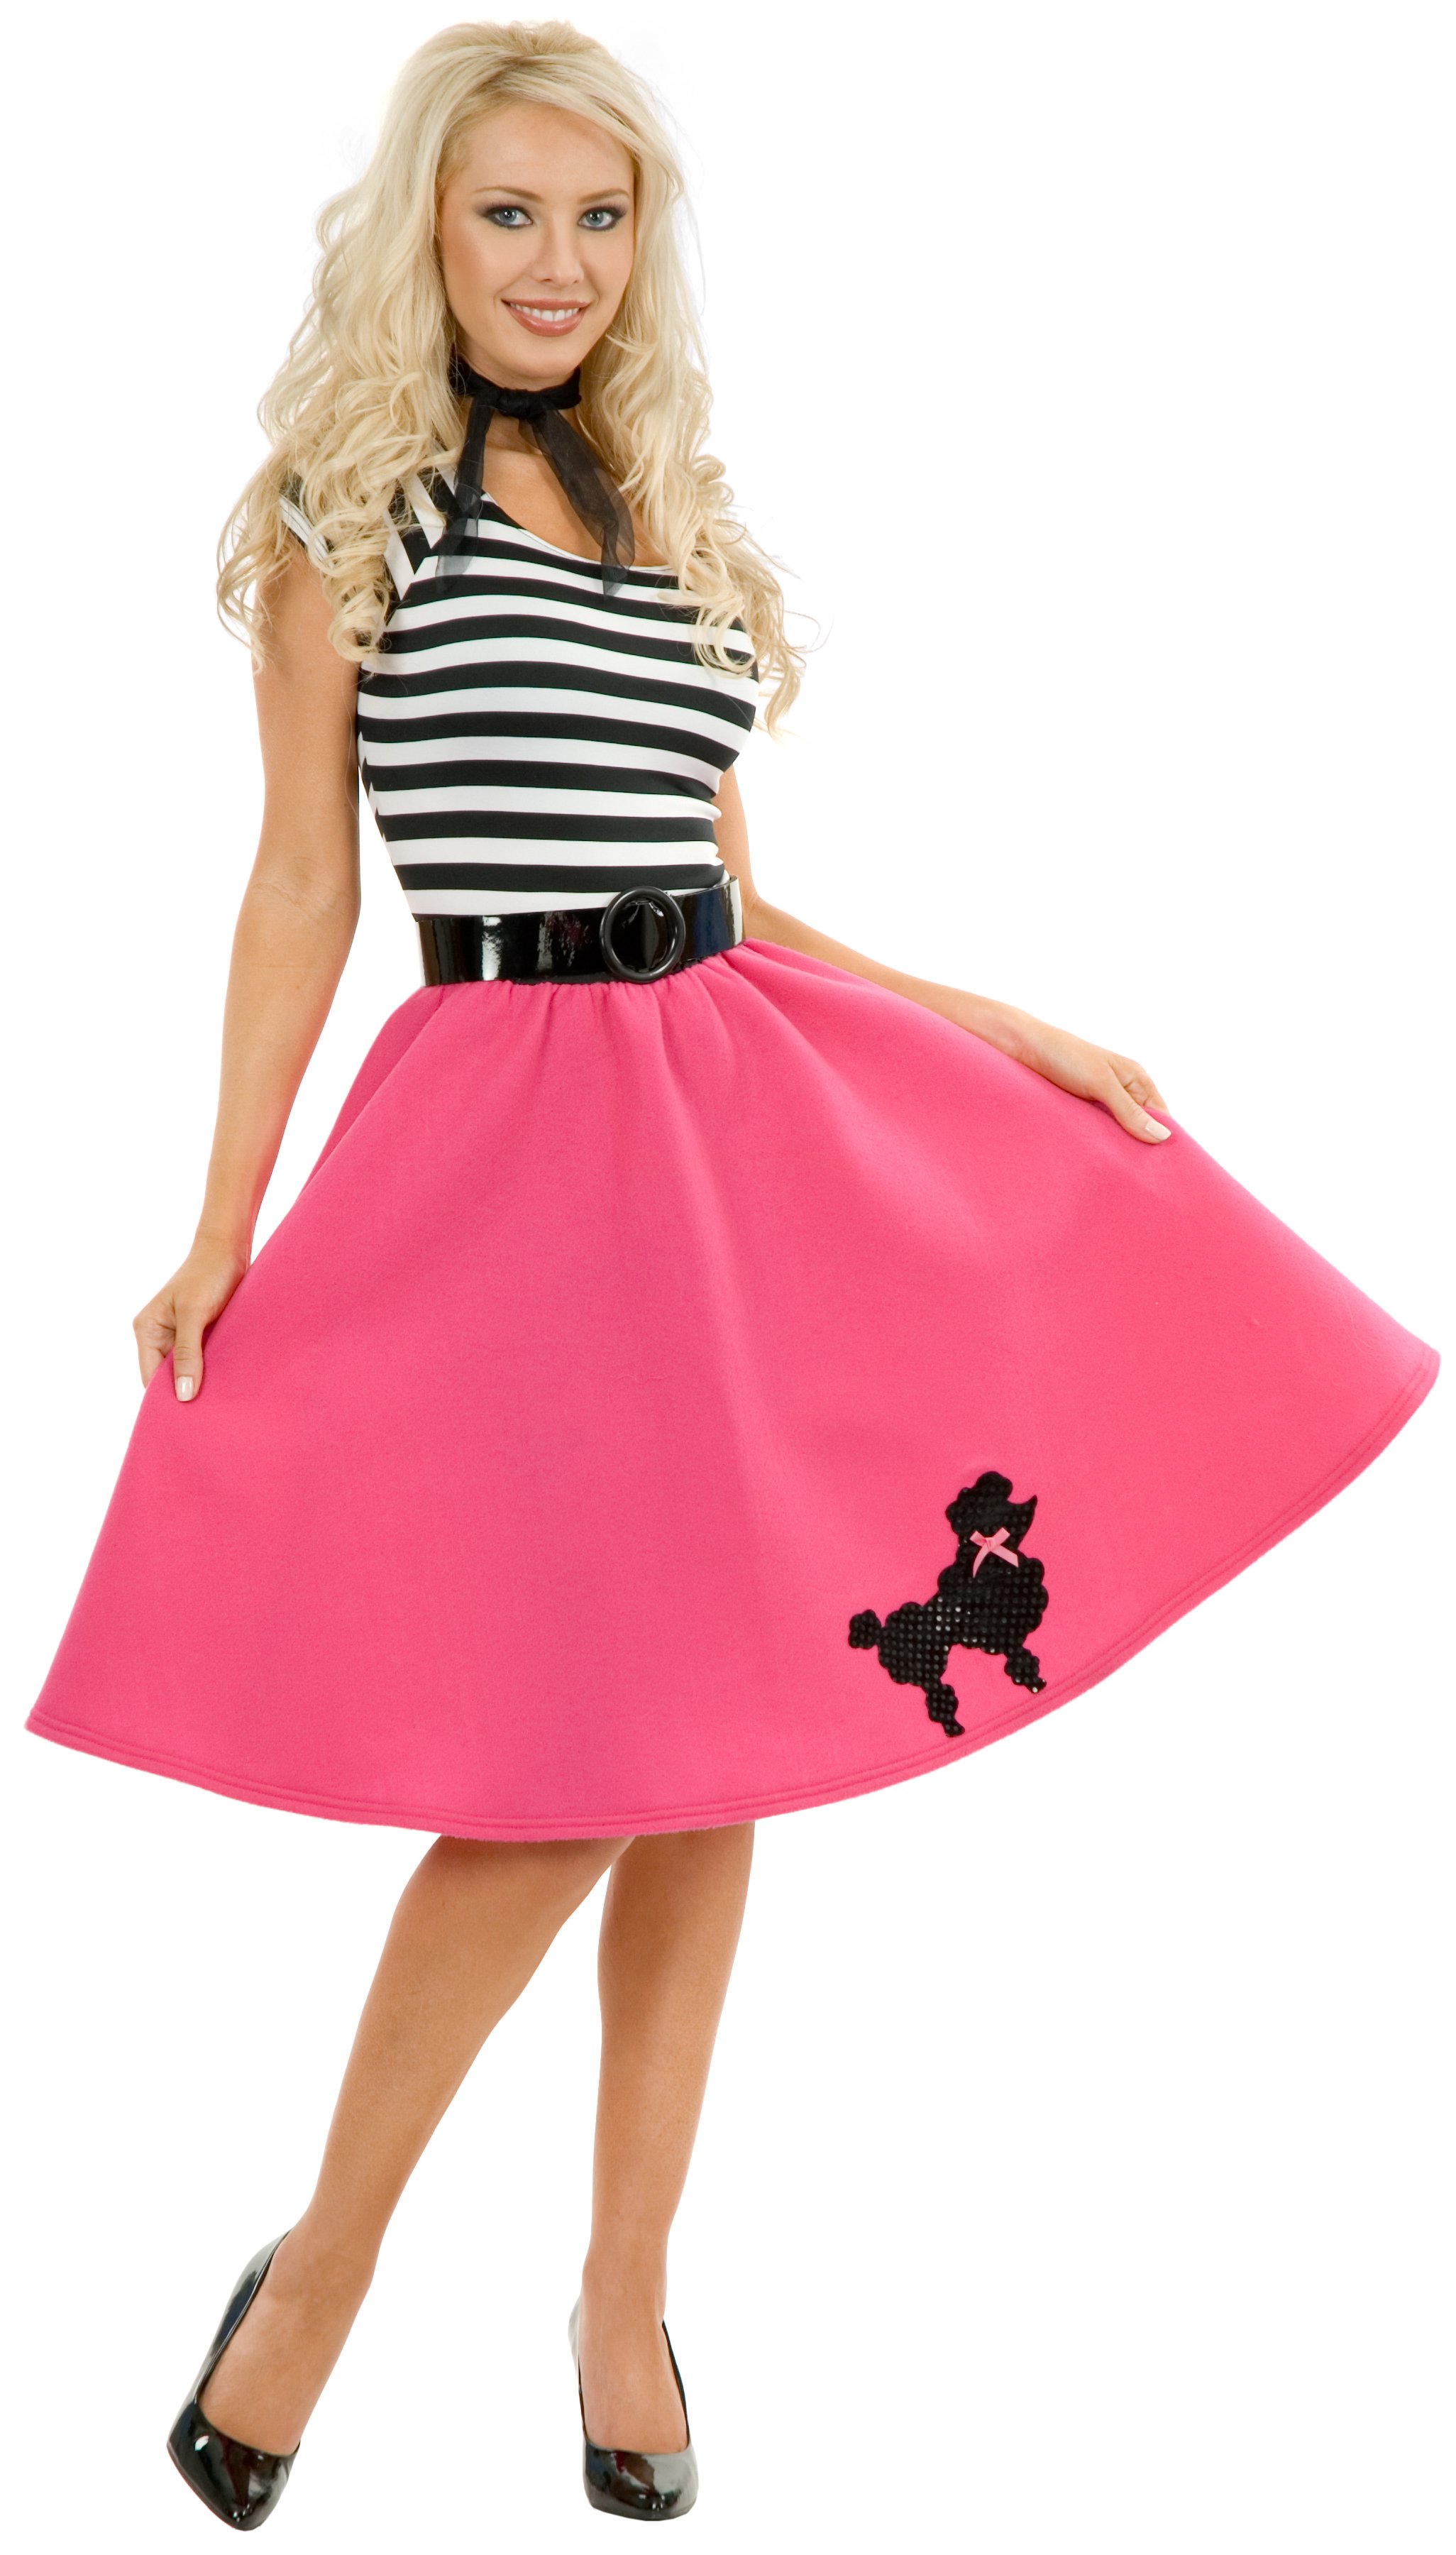 Poodle Skirt Plus Adult Costume